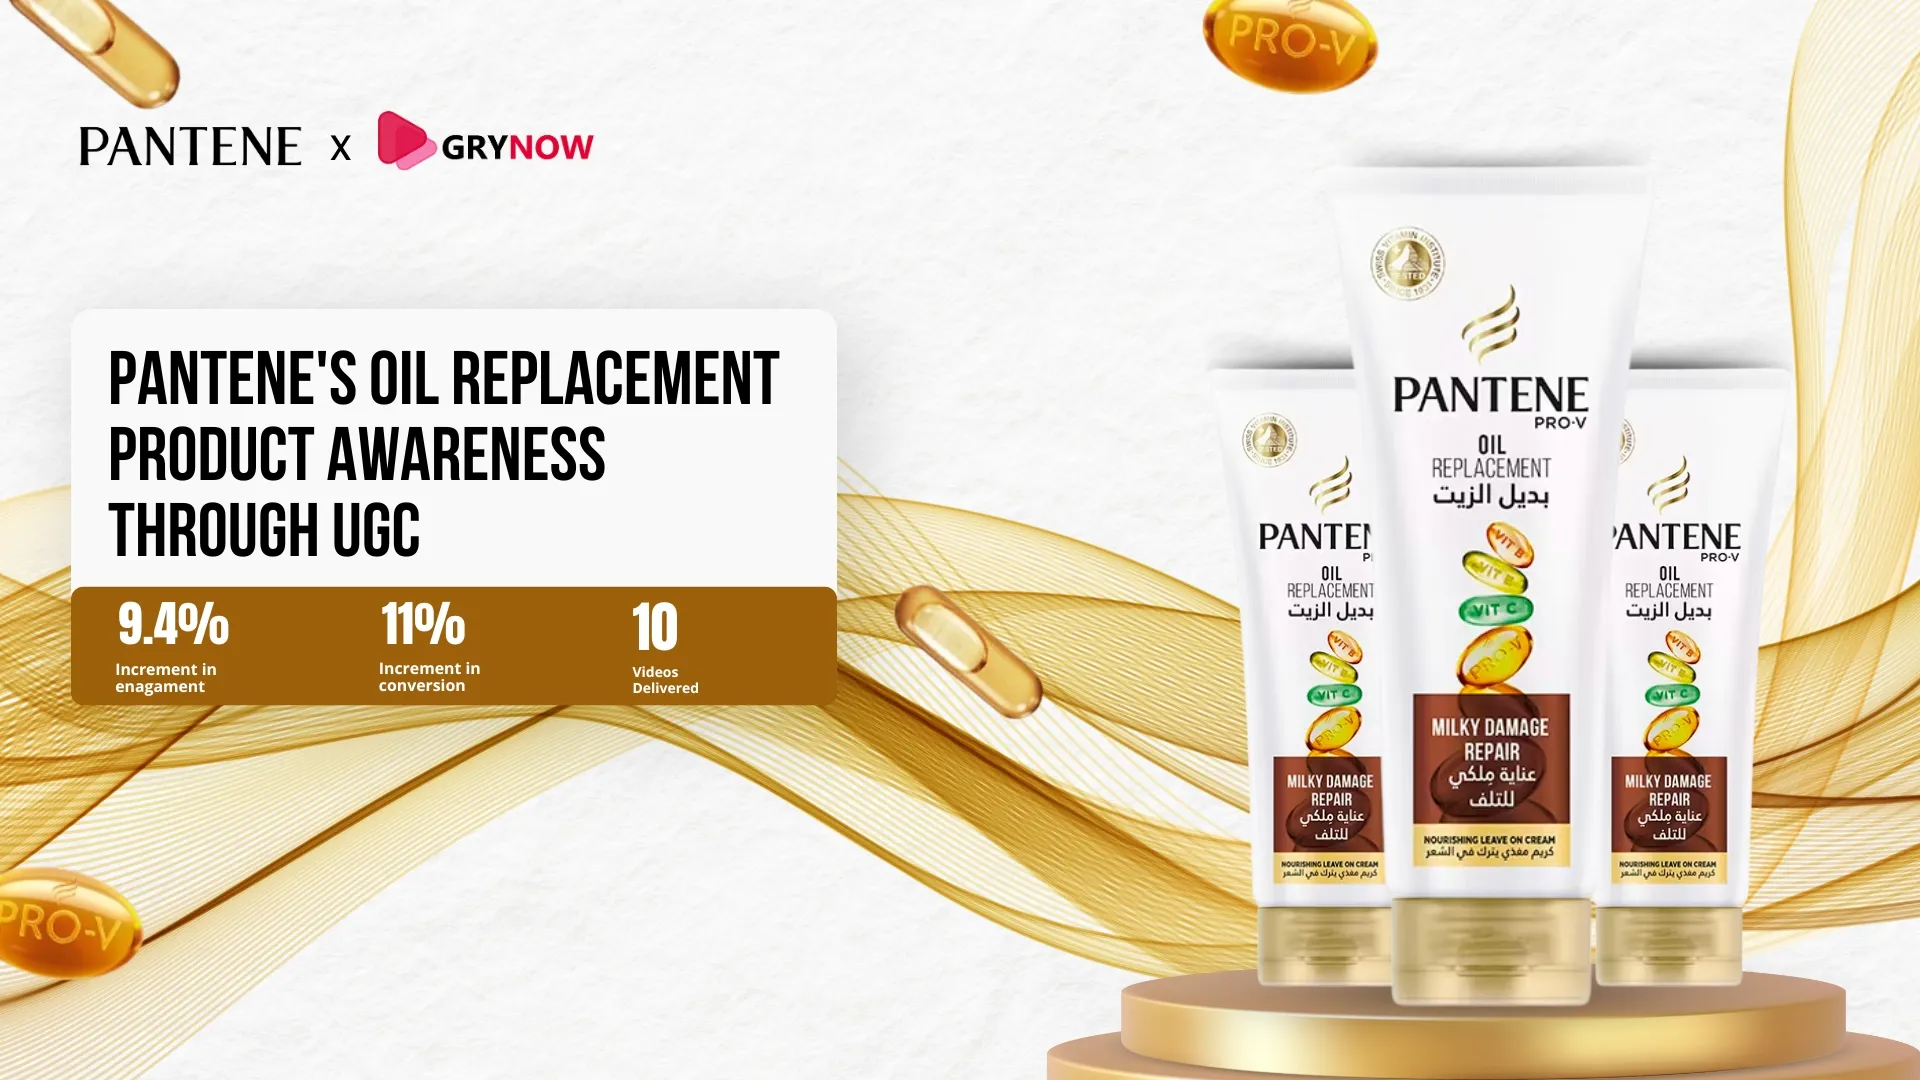  Pantene's Oil Replacement Product Awareness through UGC